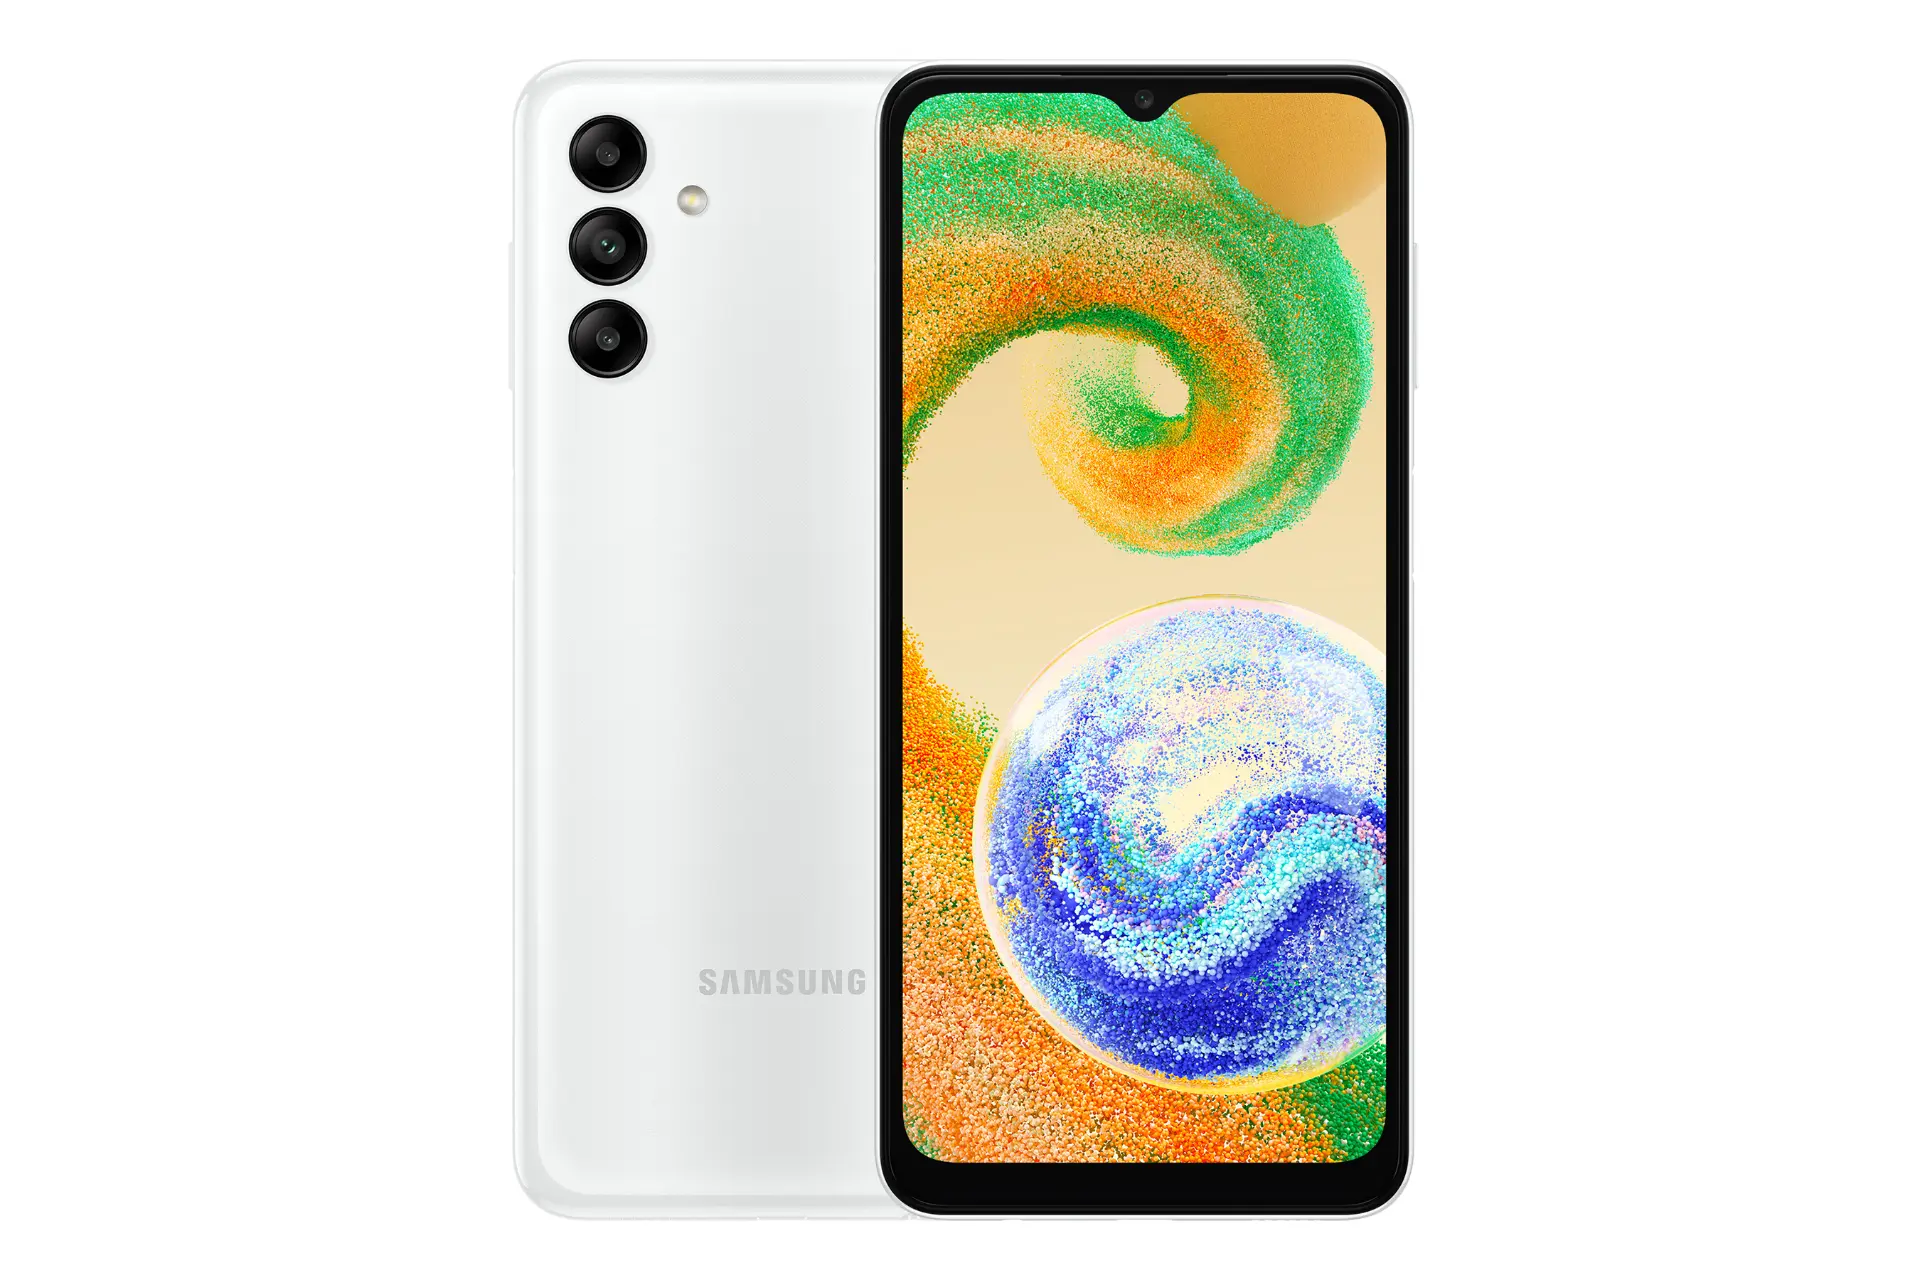 نمای کلی گوشی موبایل گلکسی A04s سامسونگ / Samsung Galaxy A04s با نمایشگر روشن و نمایش لوگو و دوربین پشت رنگ سفید